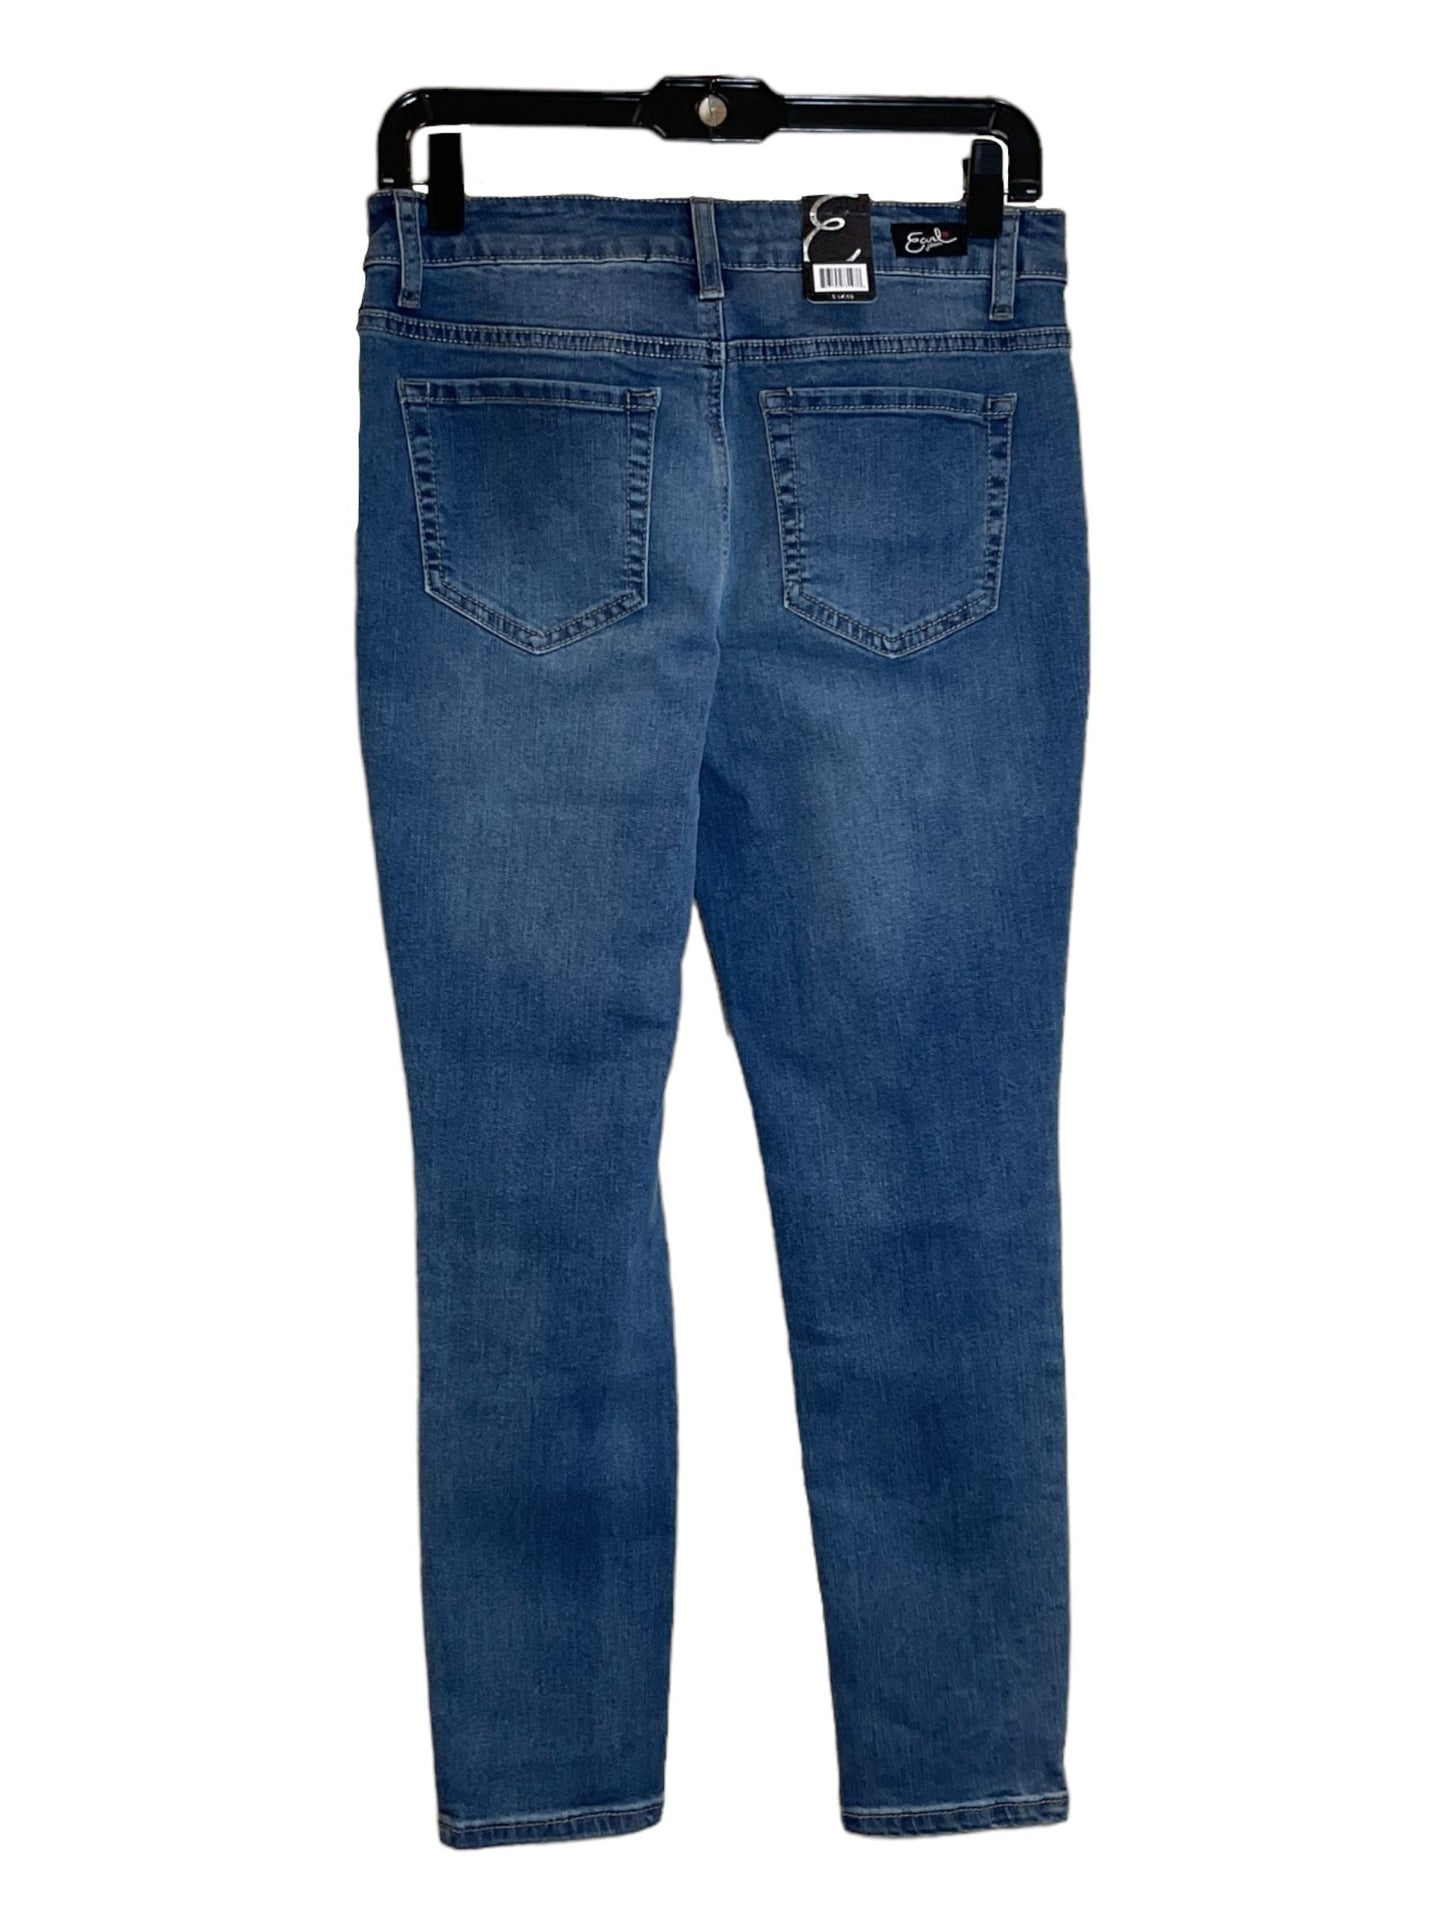 Jeans Skinny By Earl Jean  Size: 6